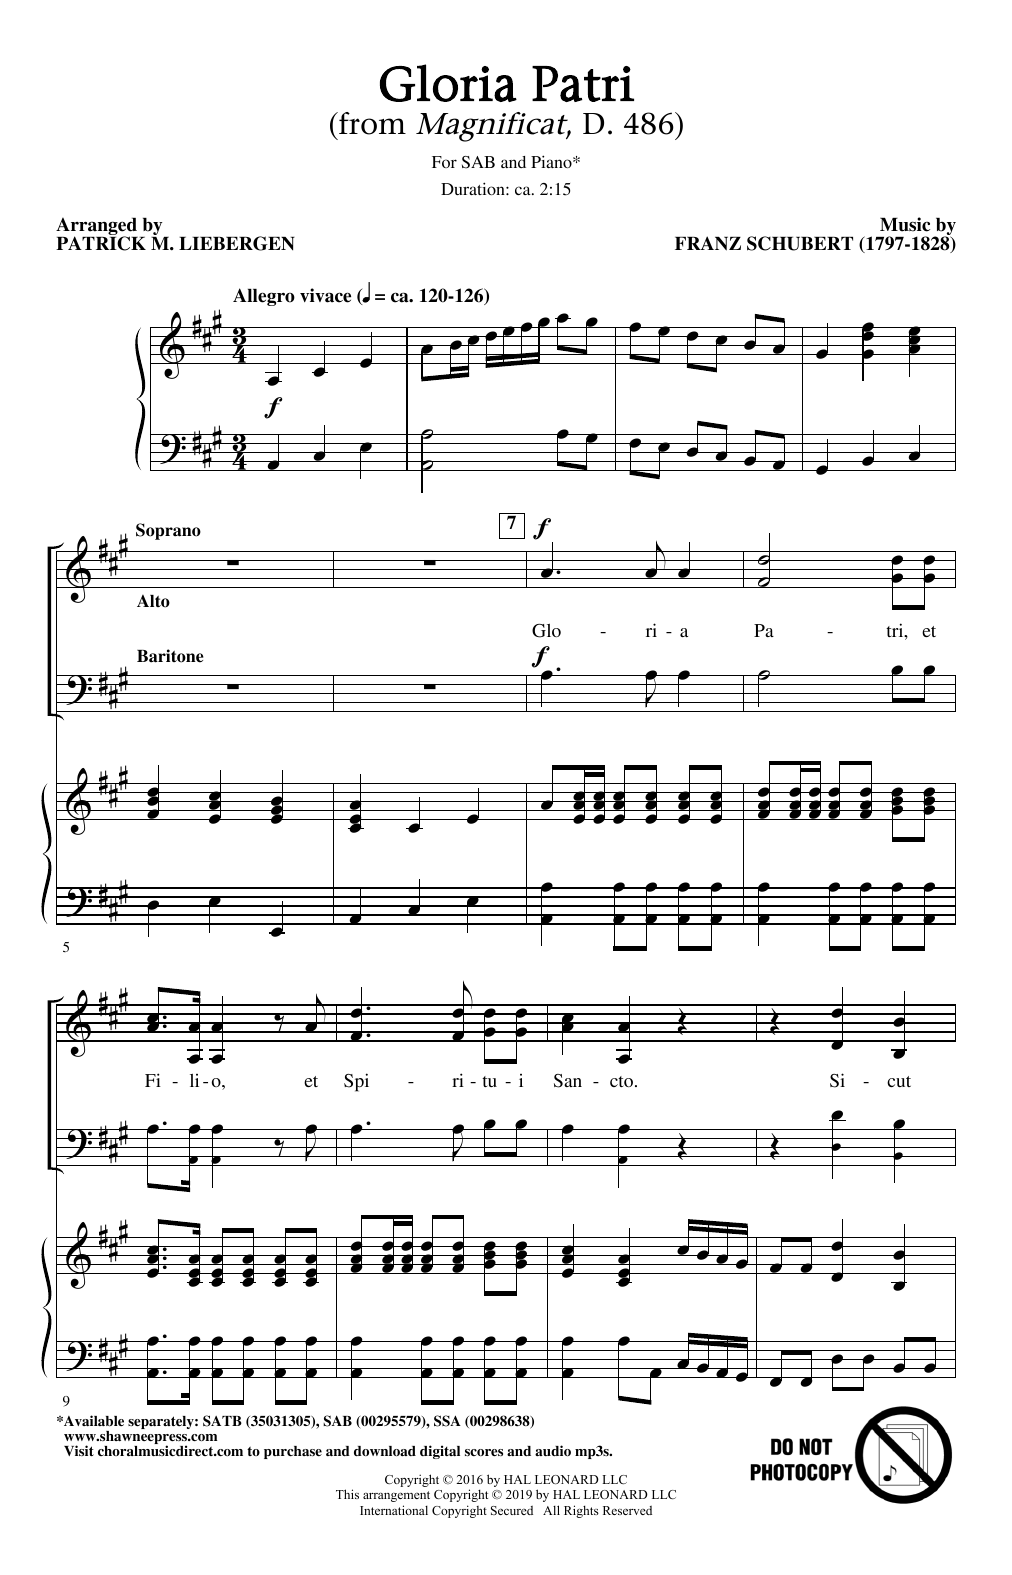 Franz Schubert Gloria Patri (from Magnificat, D. 486) (arr. Patrick M. Liebergen) Sheet Music Notes & Chords for SSA Choir - Download or Print PDF